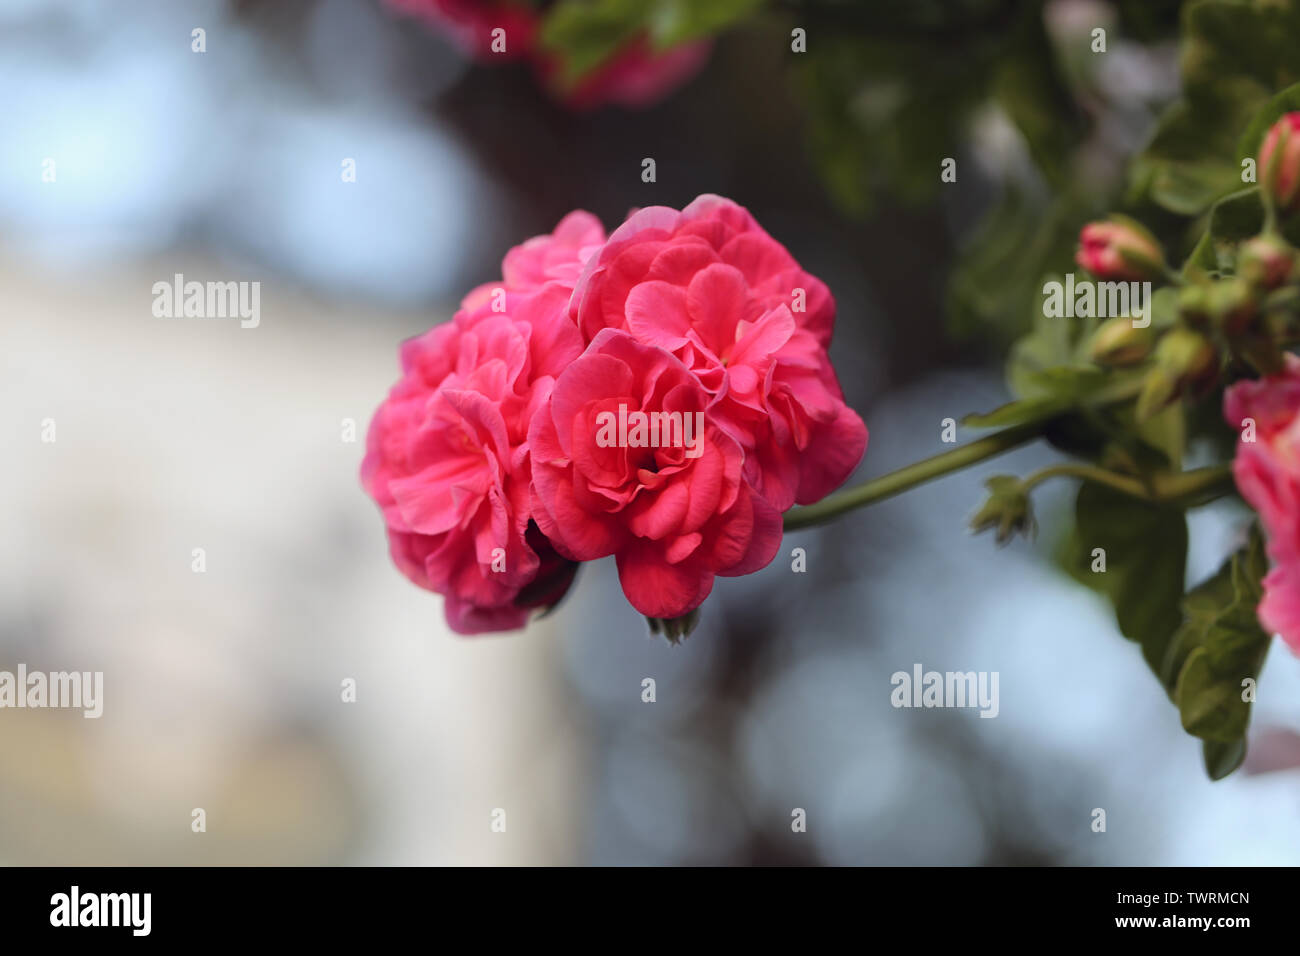 Bella rosa luminoso fiori che palla shapred. In questa foto è possibile vedere anche alcune foglie e steli del fiore. Lo sfondo è molto morbido. Foto Stock